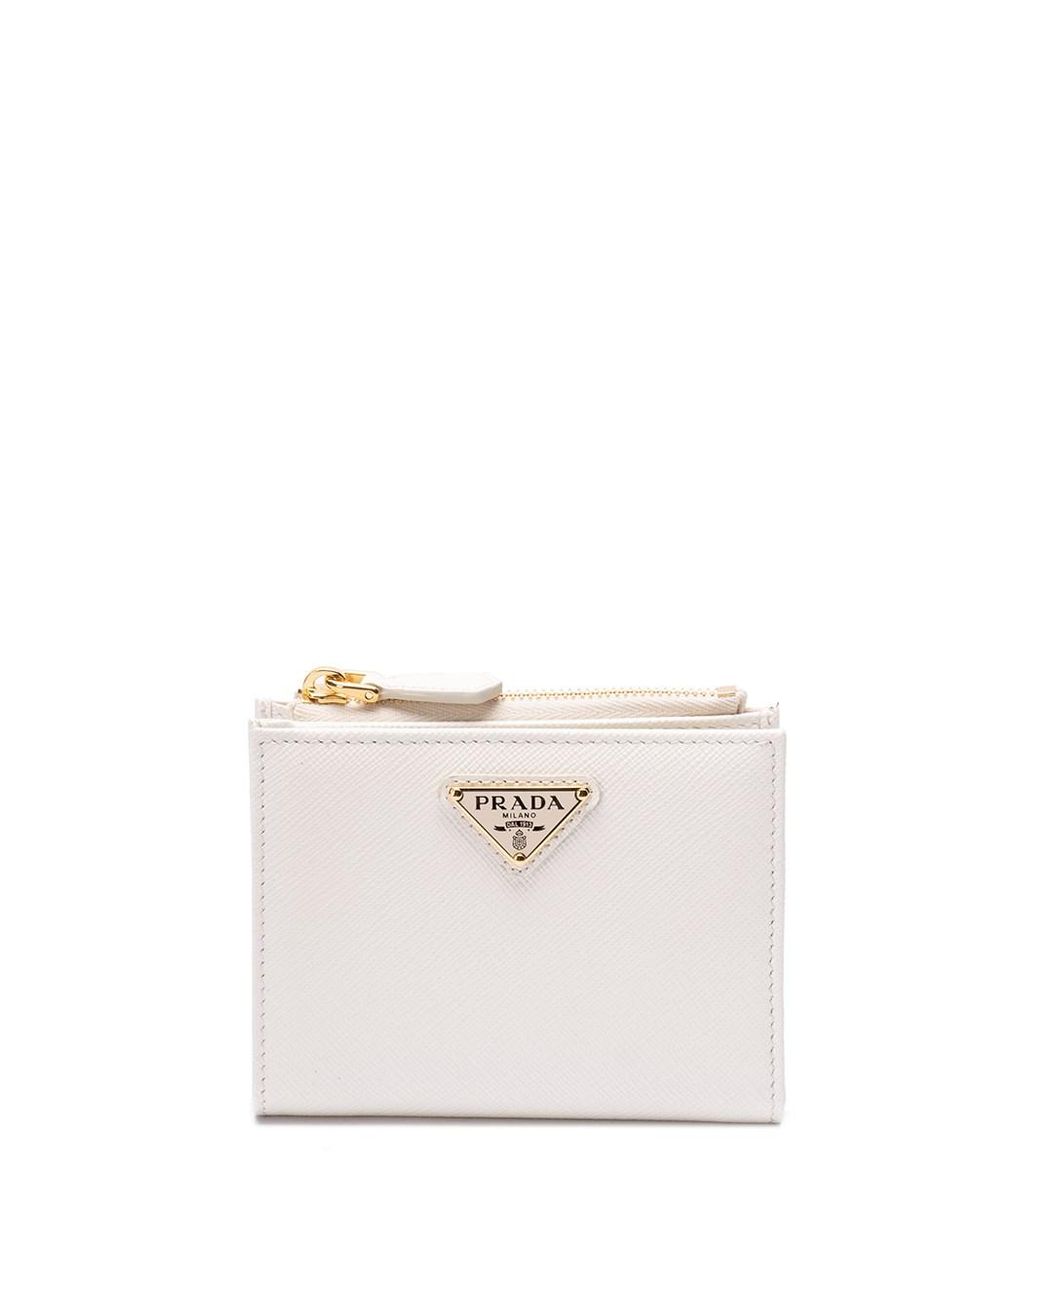 Aesthetic | White handbag, Pretty bags, White purses